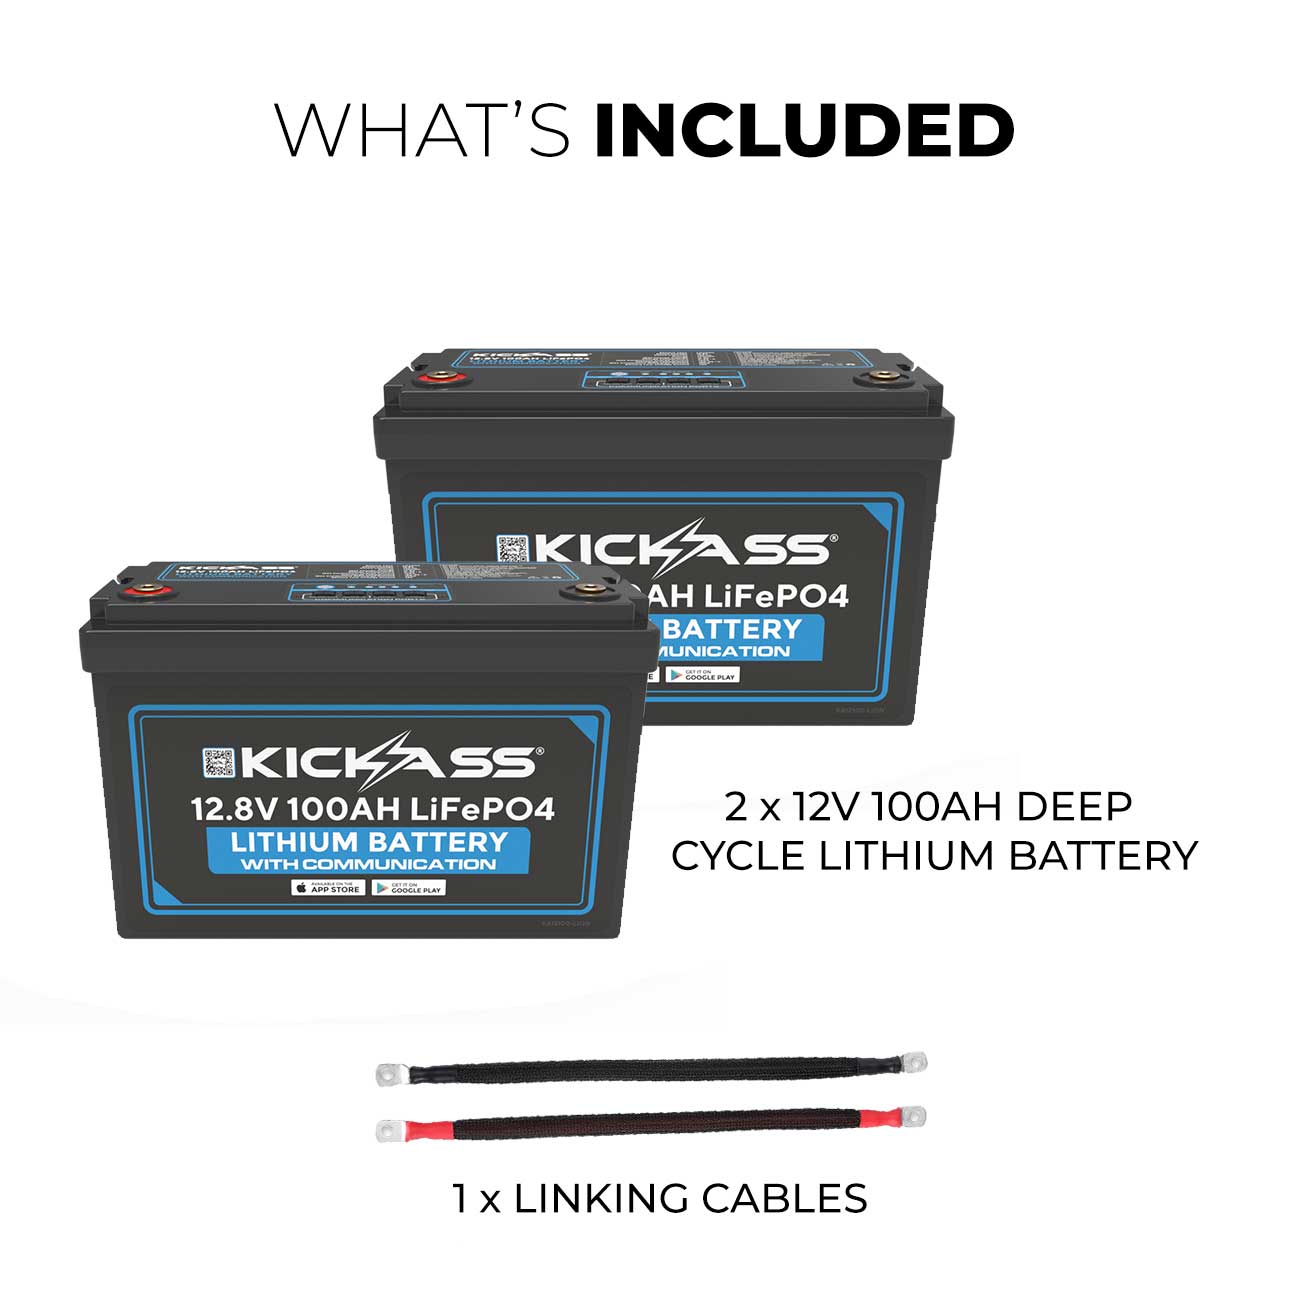 KickAss 12V 100AH Deep Cycle Lithium Battery 2 Pack